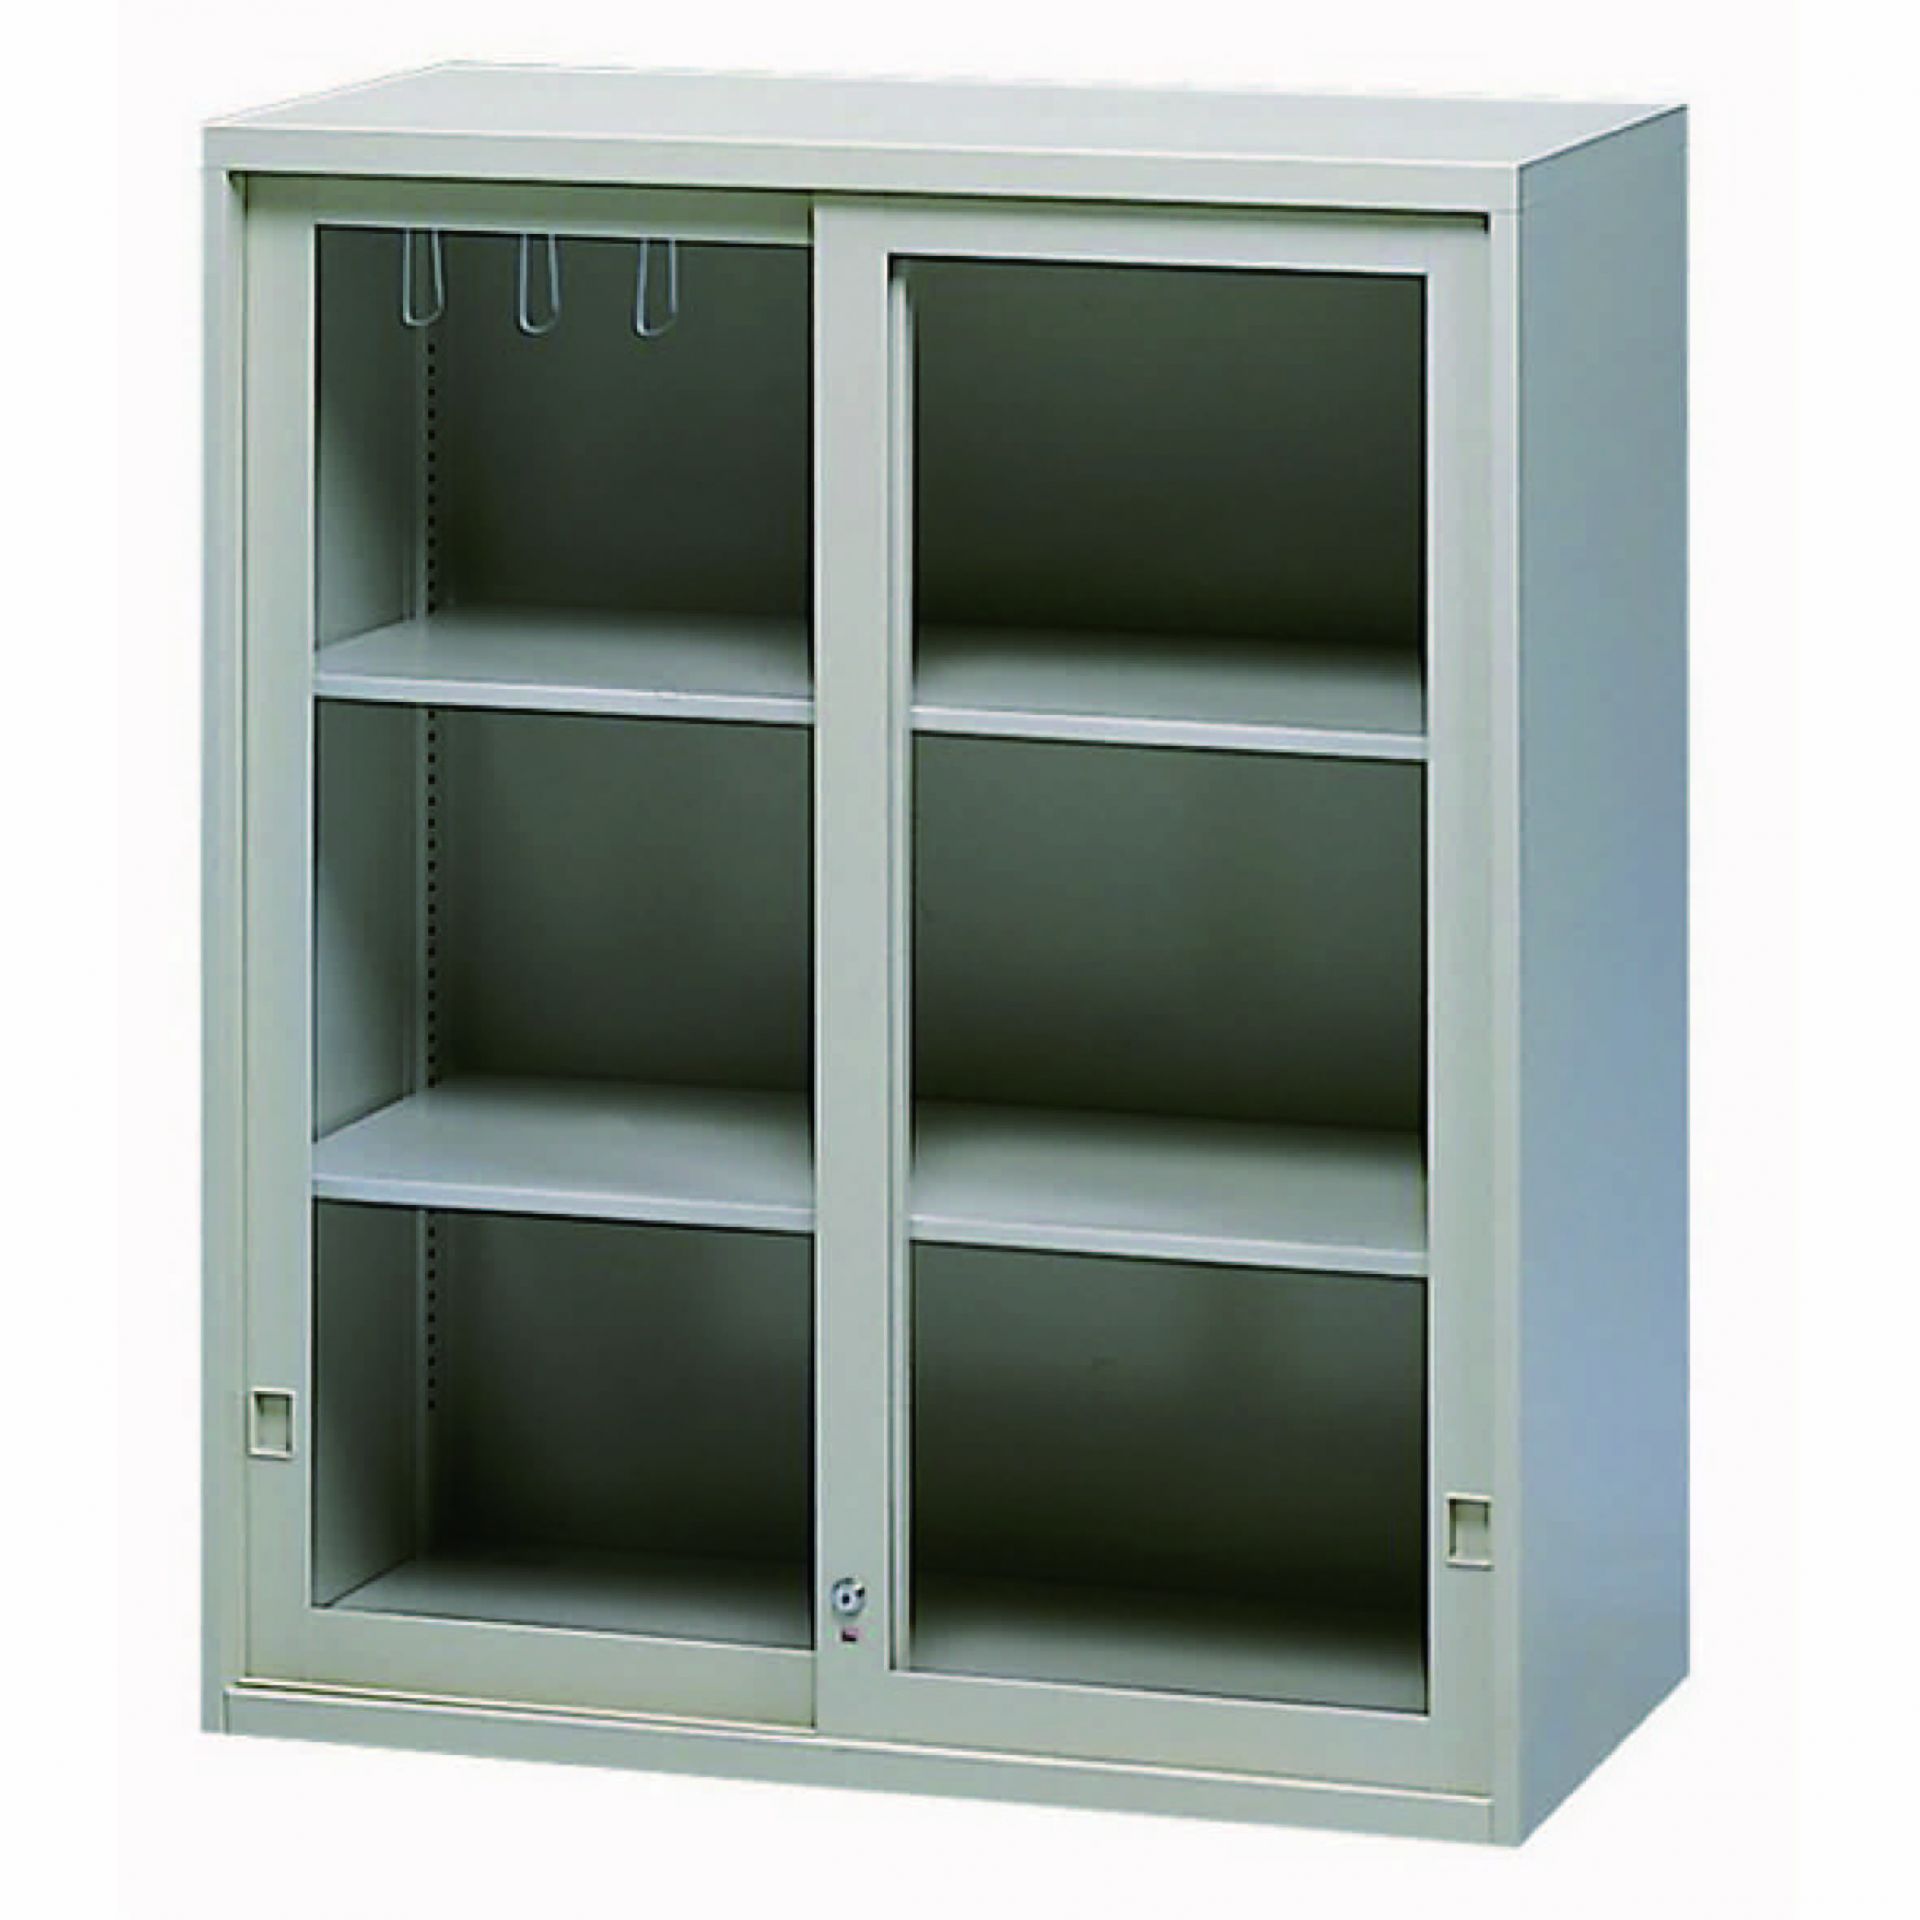 玻璃加框拉門上置式鋼製公文櫃